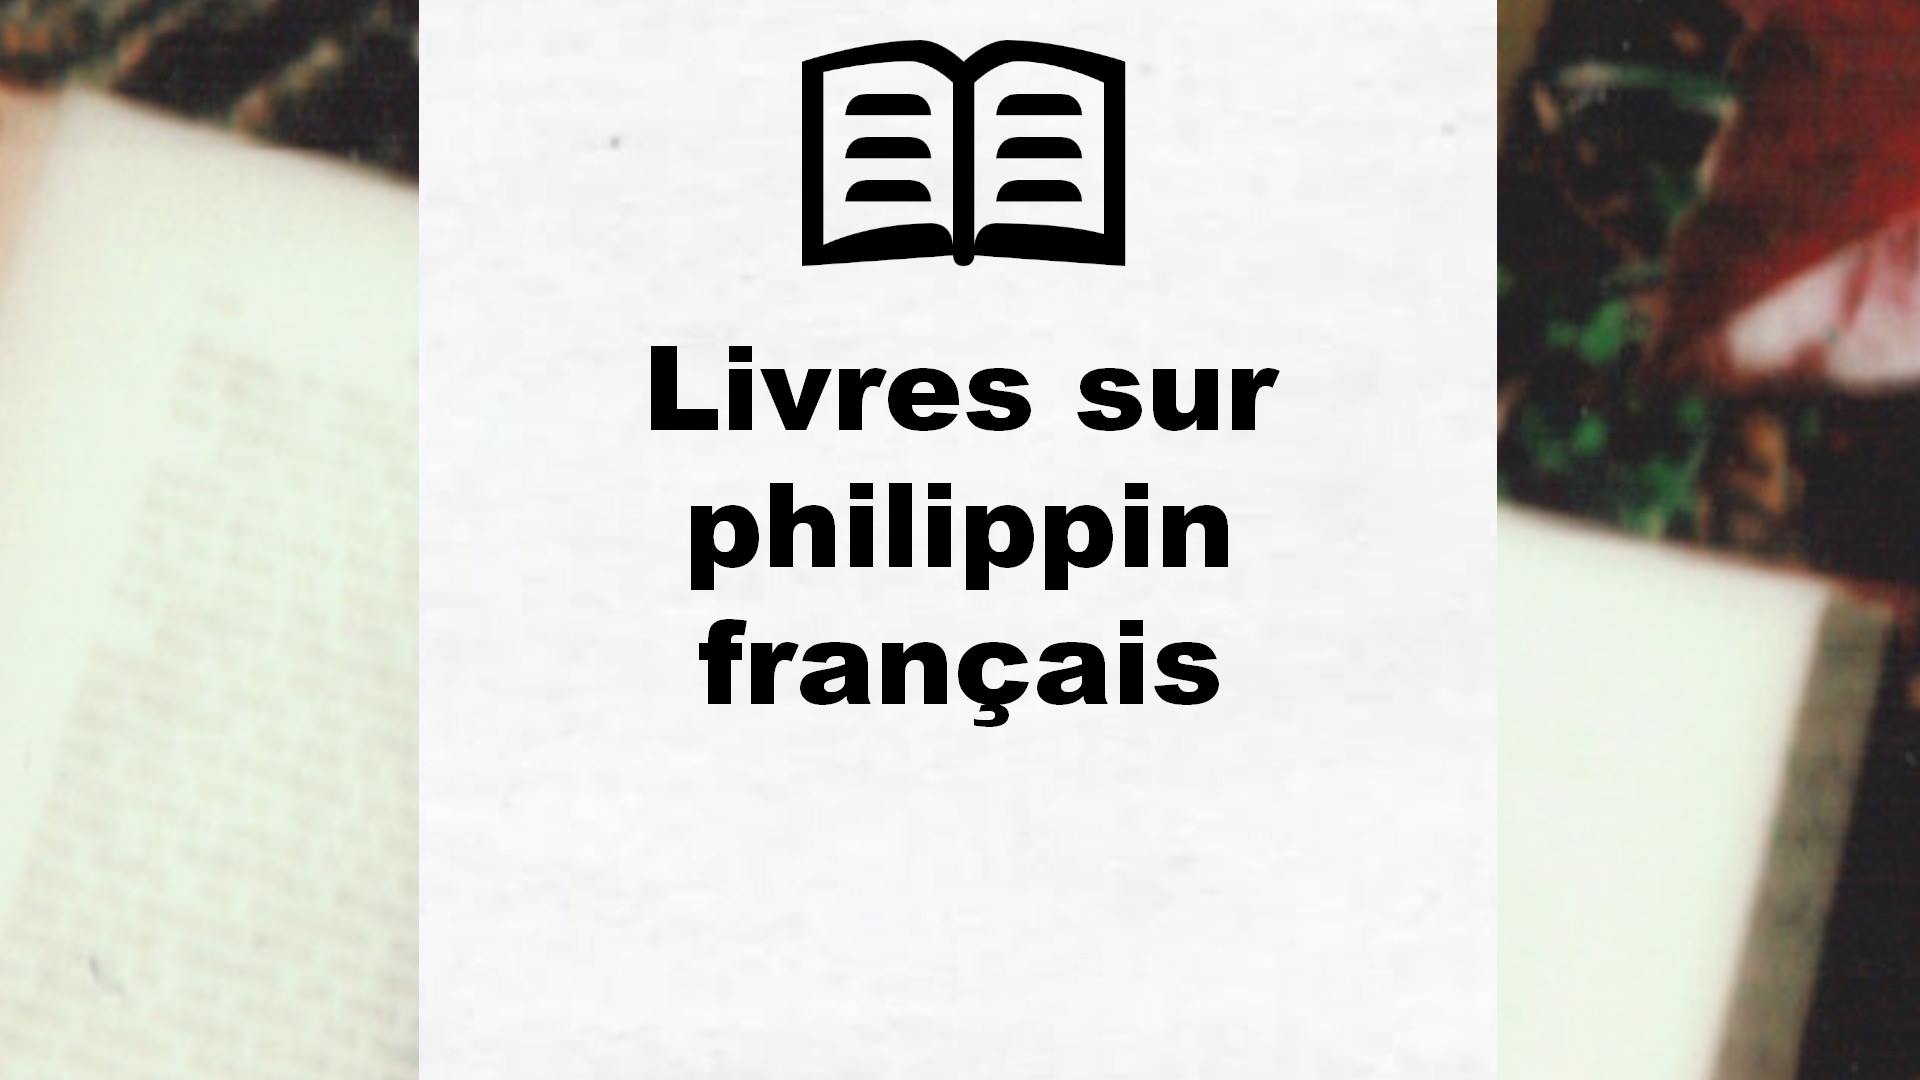 Livres sur philippin français